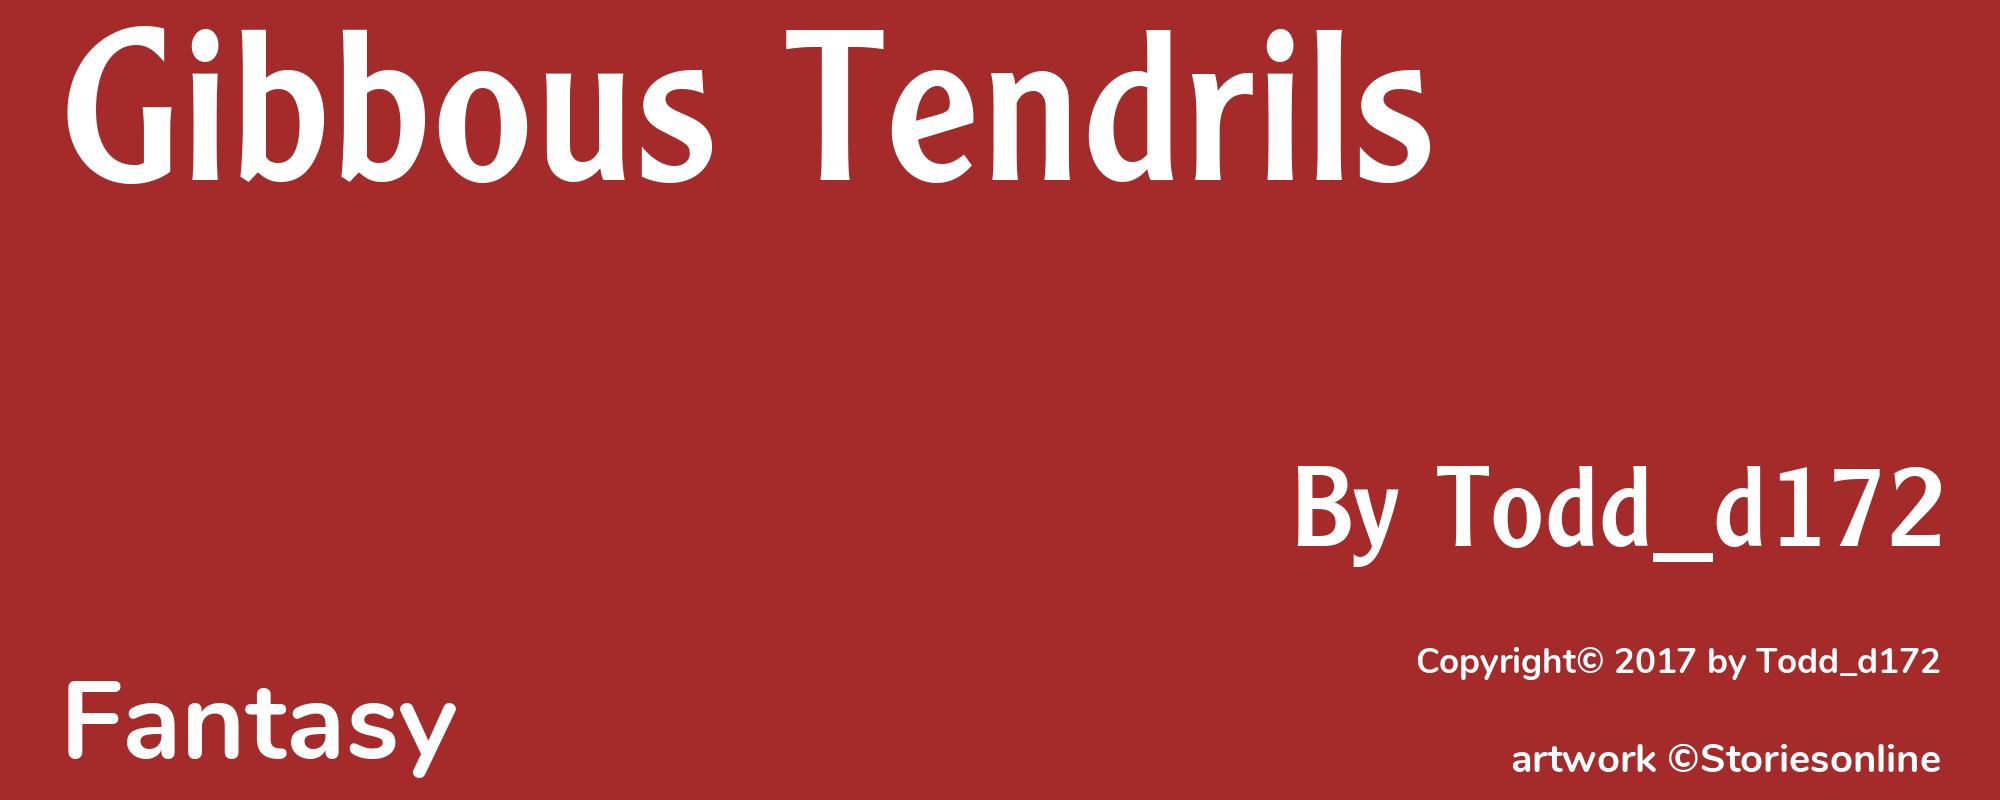 Gibbous Tendrils - Cover